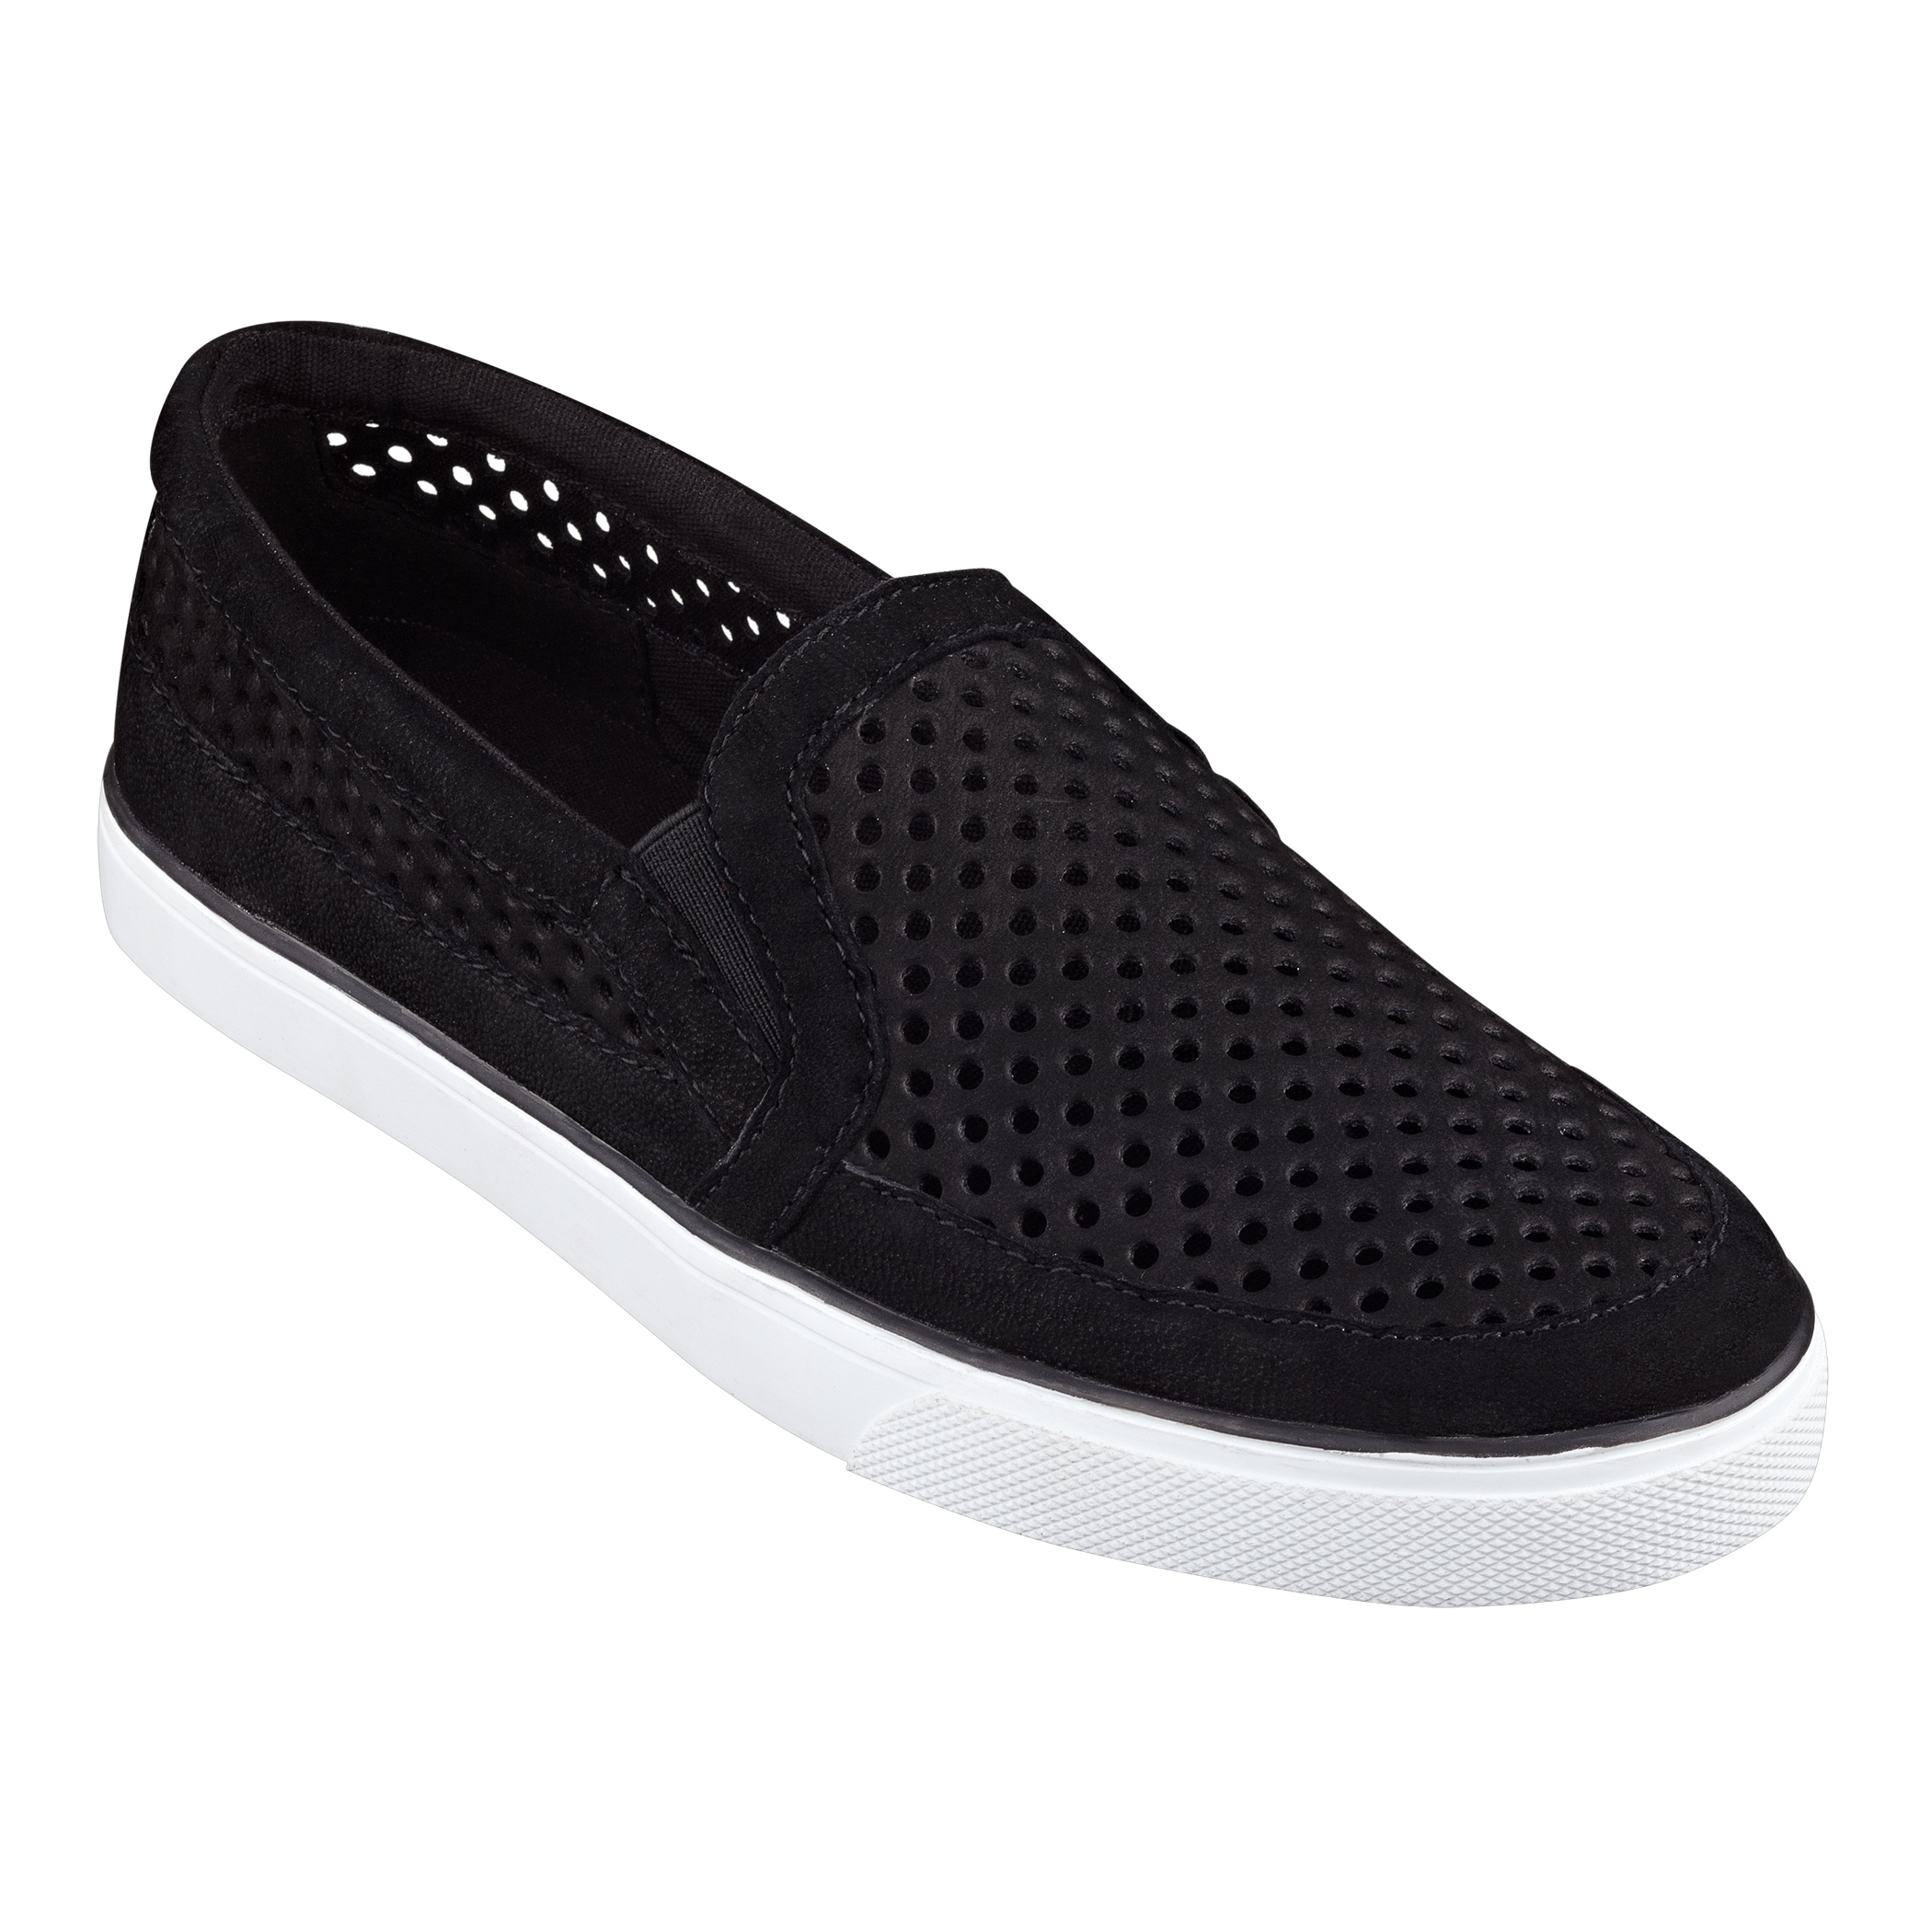 Nine west Brodie Slipon Sneakers Slip On Sneaker in Black | Lyst